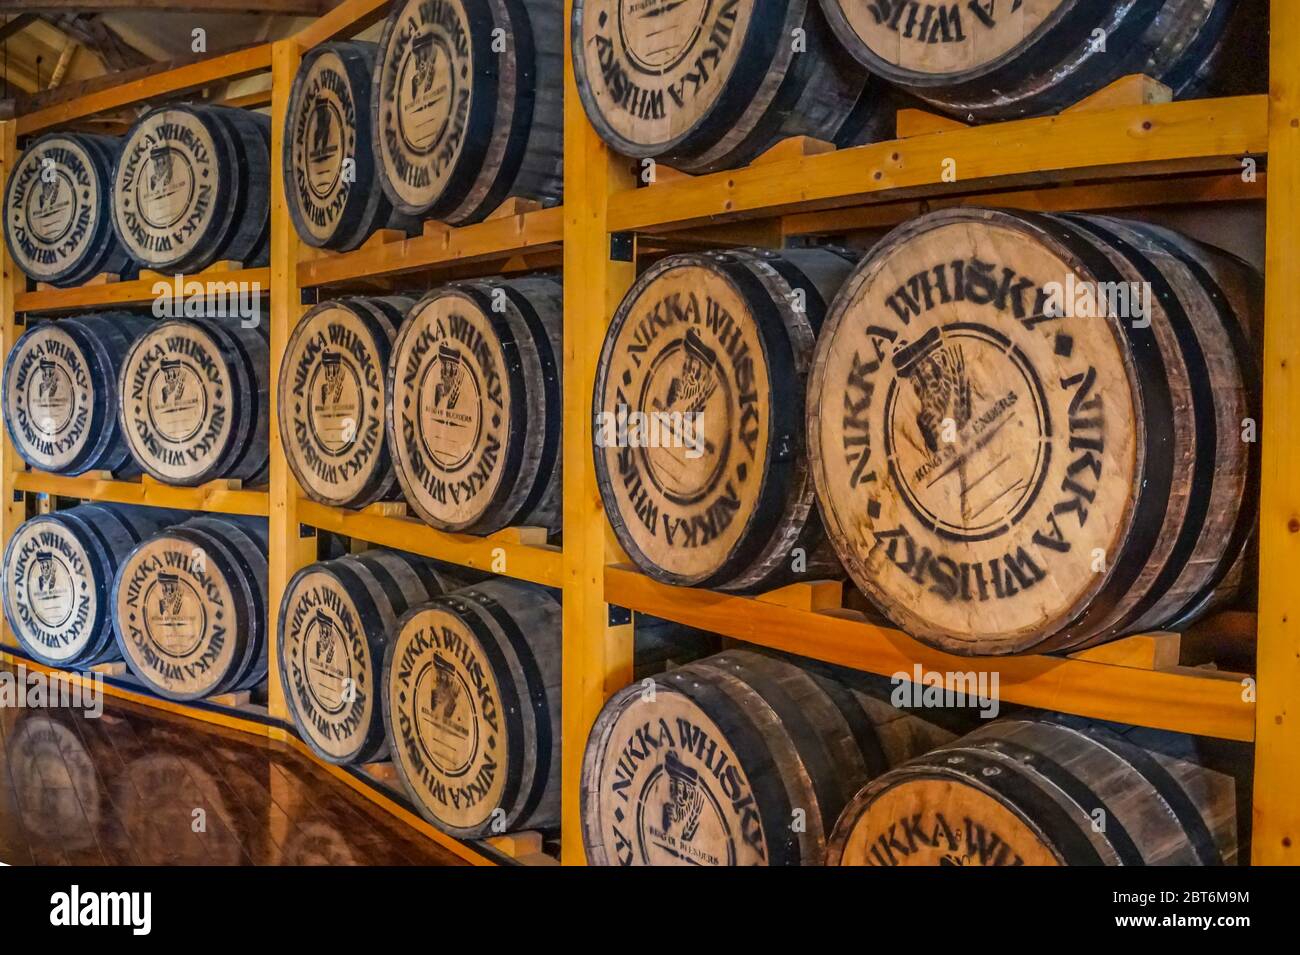 Barili di whisky Nikka in deposito alla distilleria Nikka Whisky Yoichi a Hokkaido, Giappone Foto Stock